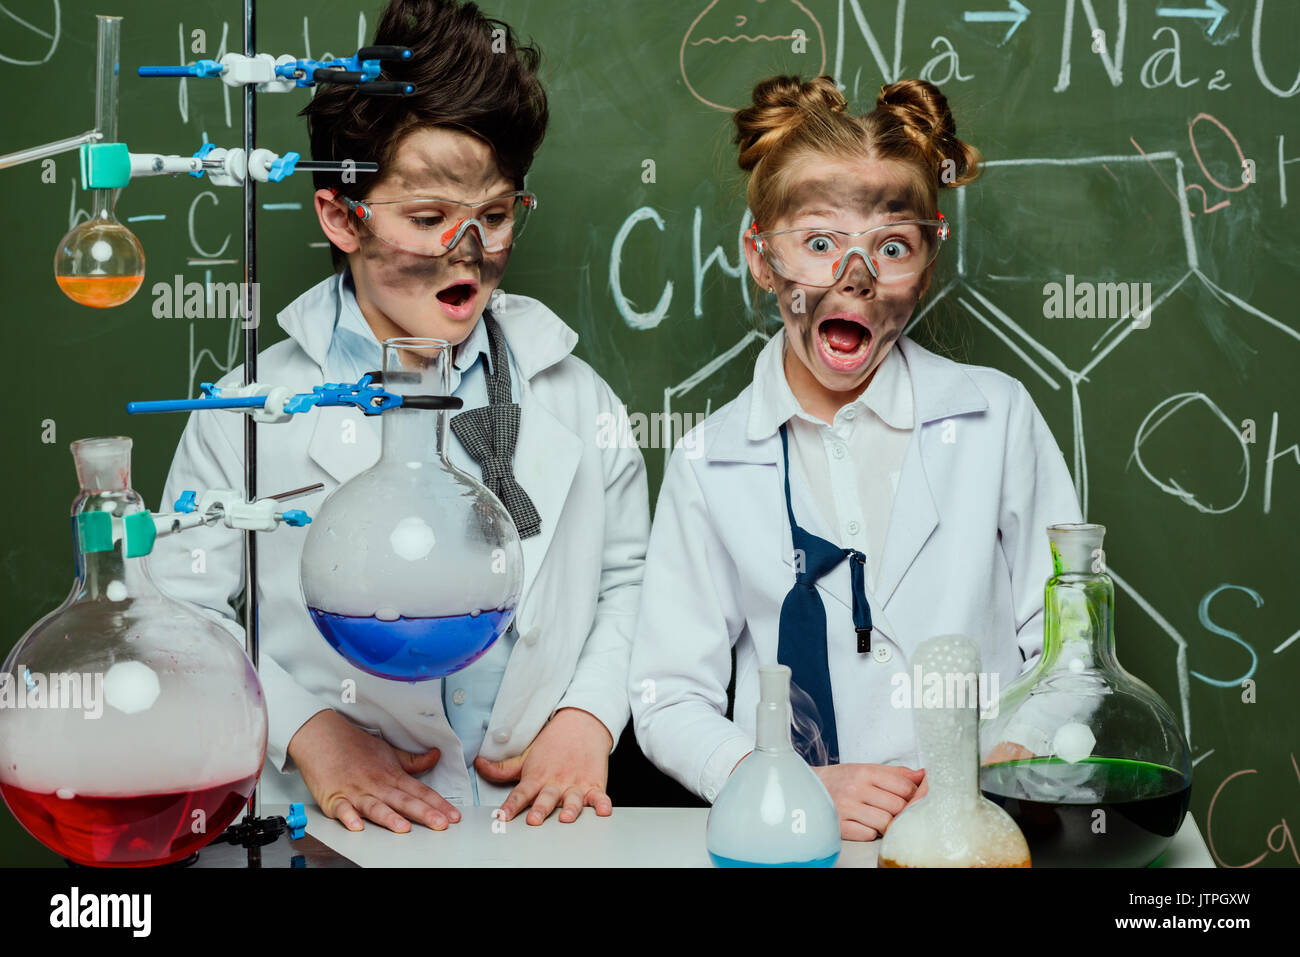 Bambini piccoli in camici con lavagna dietro in Science Laboratory, scienziati kids concetto del team Foto Stock